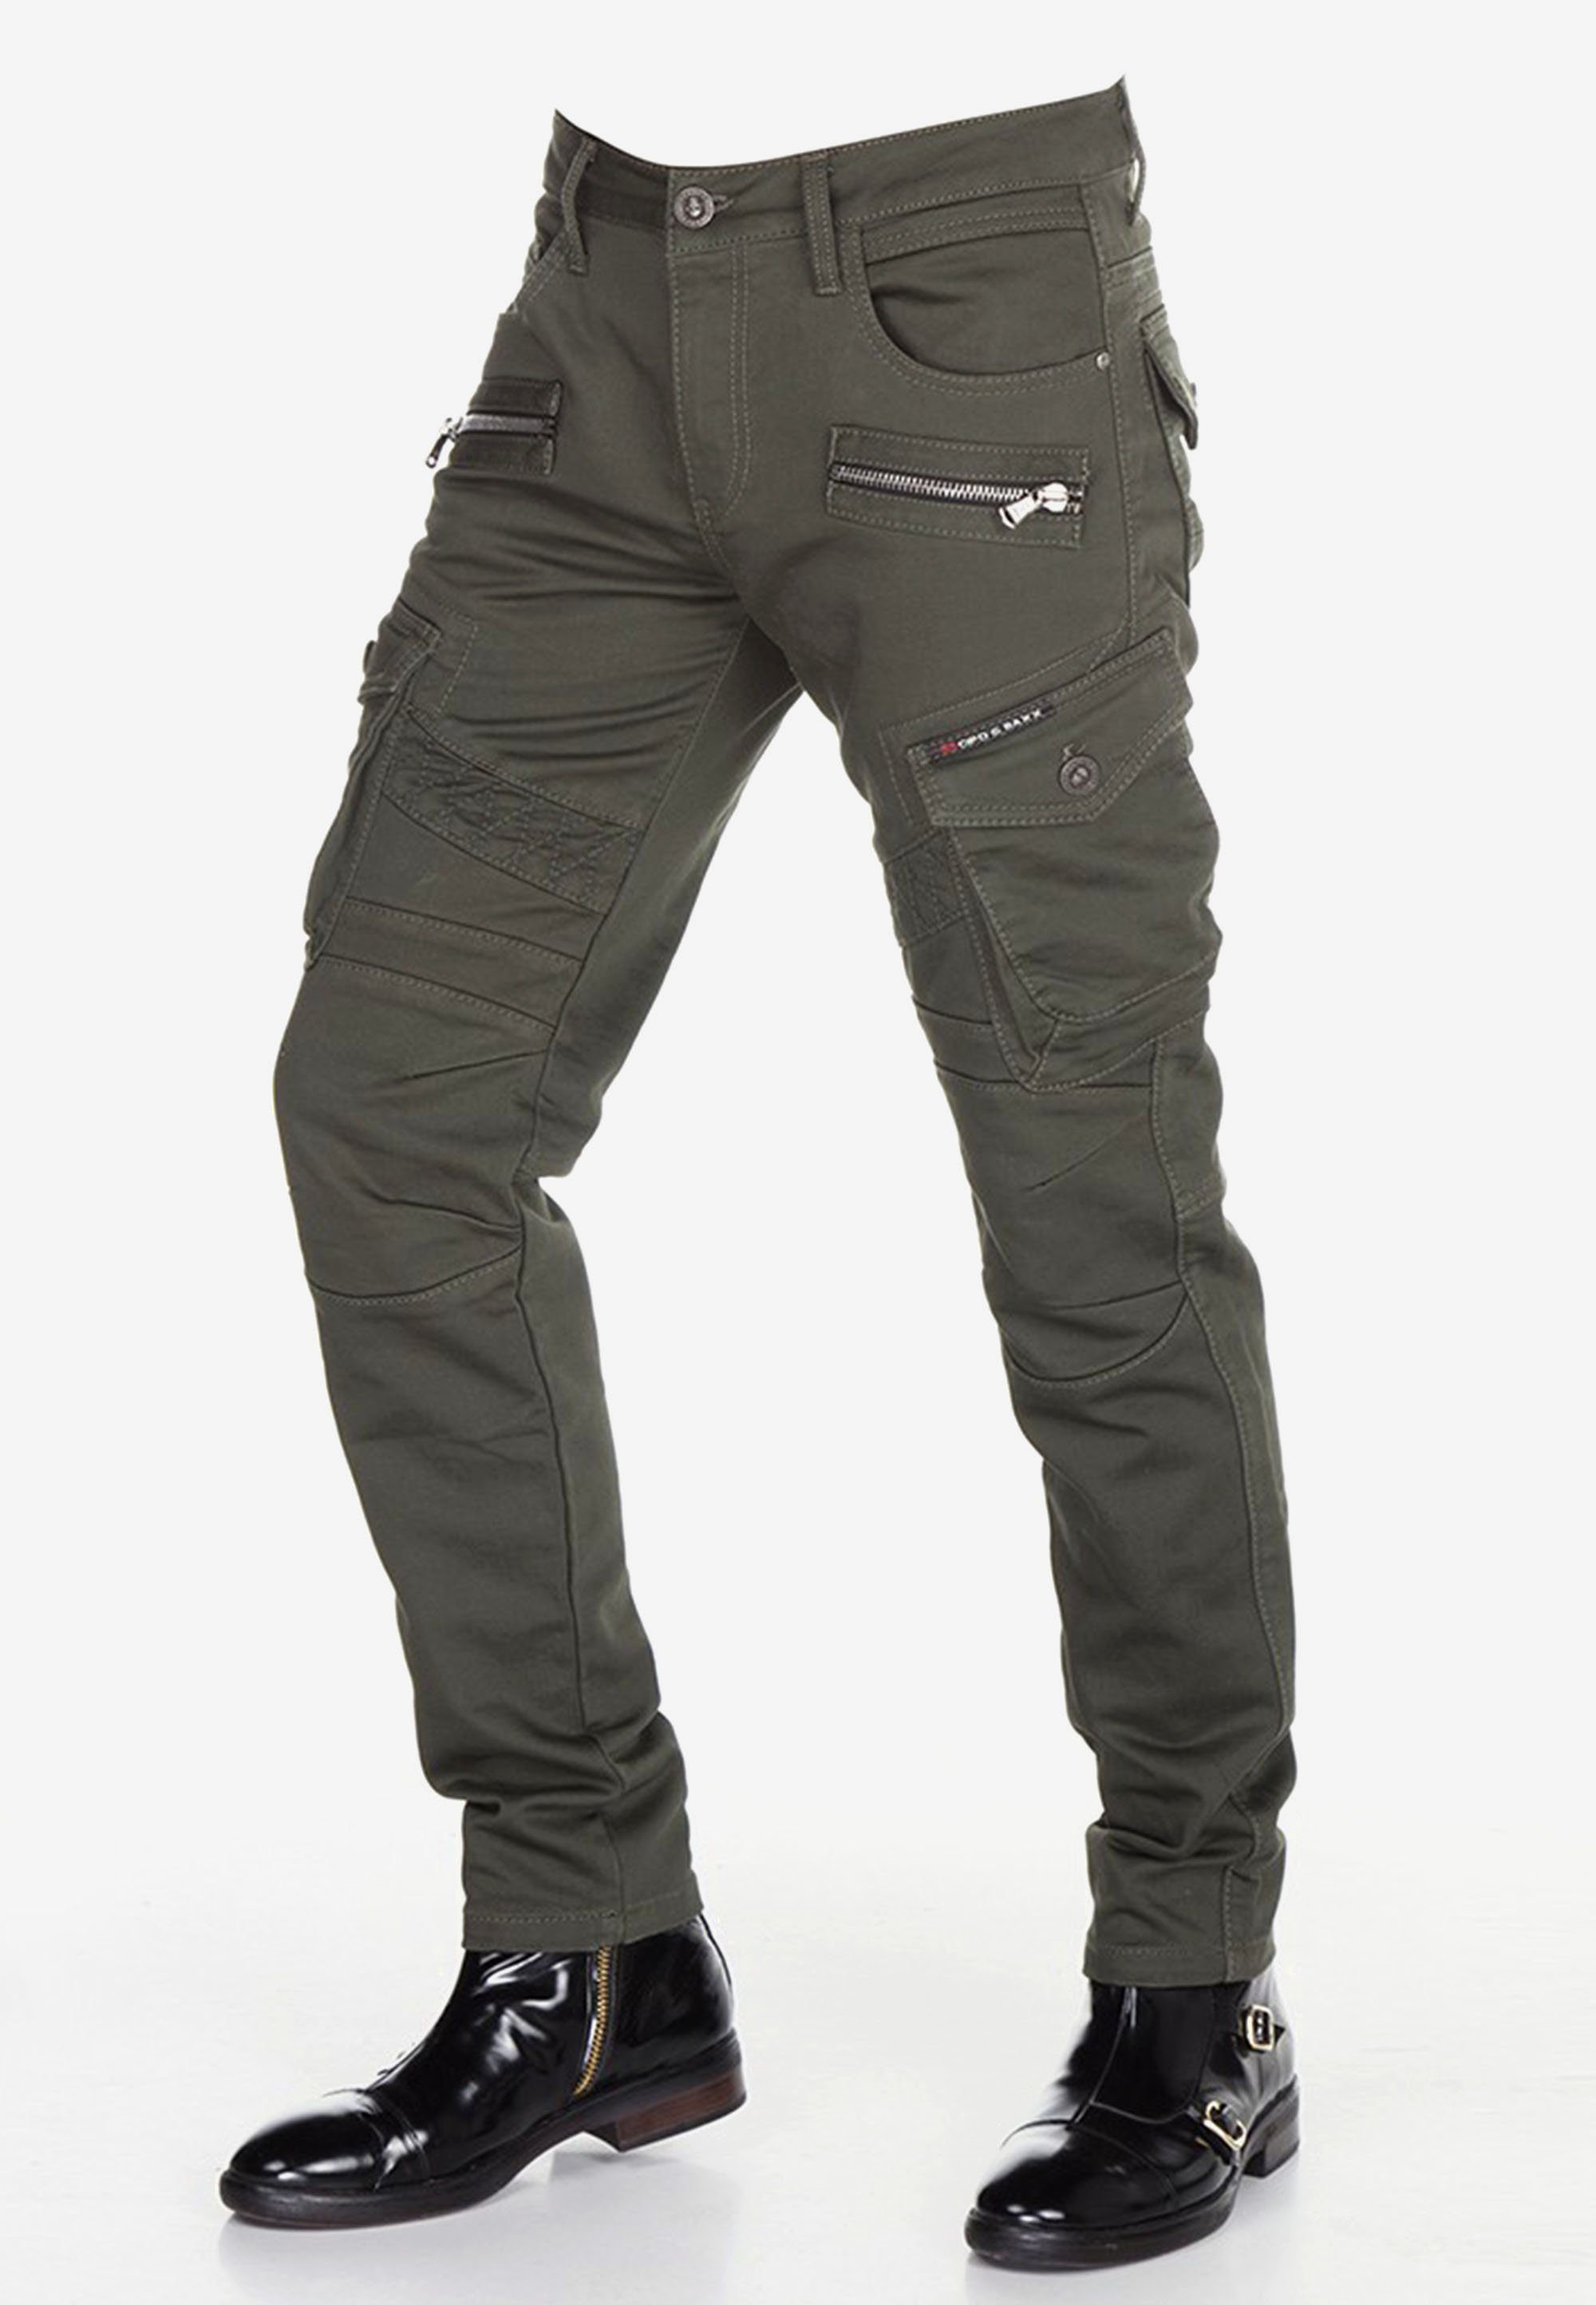 Cipo & Baxx Bequeme khaki angesagten Biker-Stil im Jeans